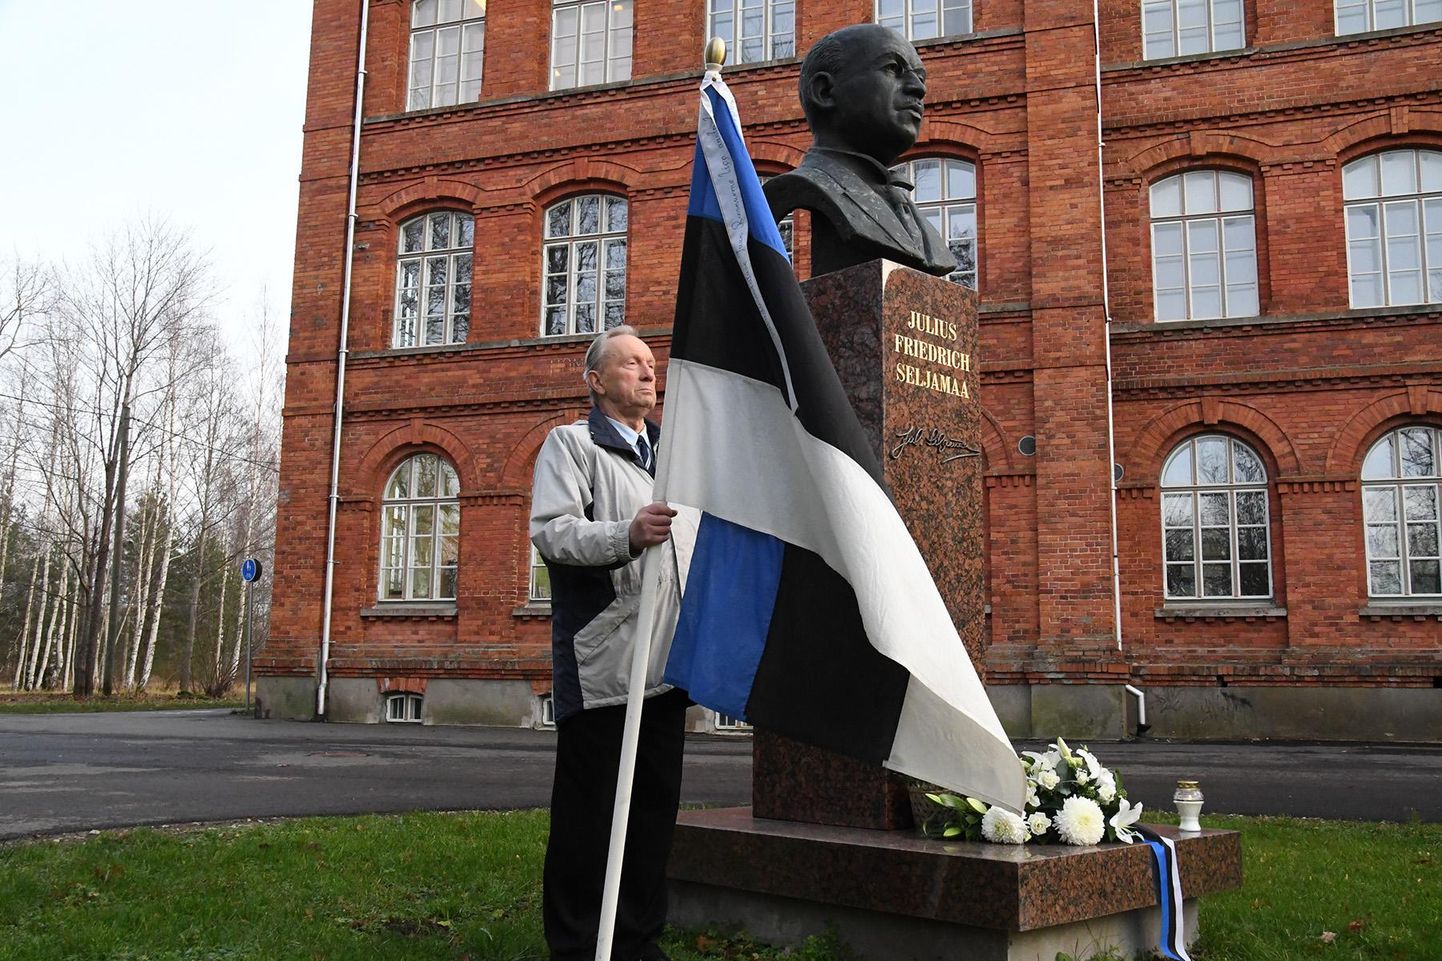 Sindi gümnaasium korraldab tseremooniaväljakul tervele kooliperele ajalootunni, millega tähistatakse 100 aasta möödumist Tartu rahulepingu läbirääkimiste algusest.